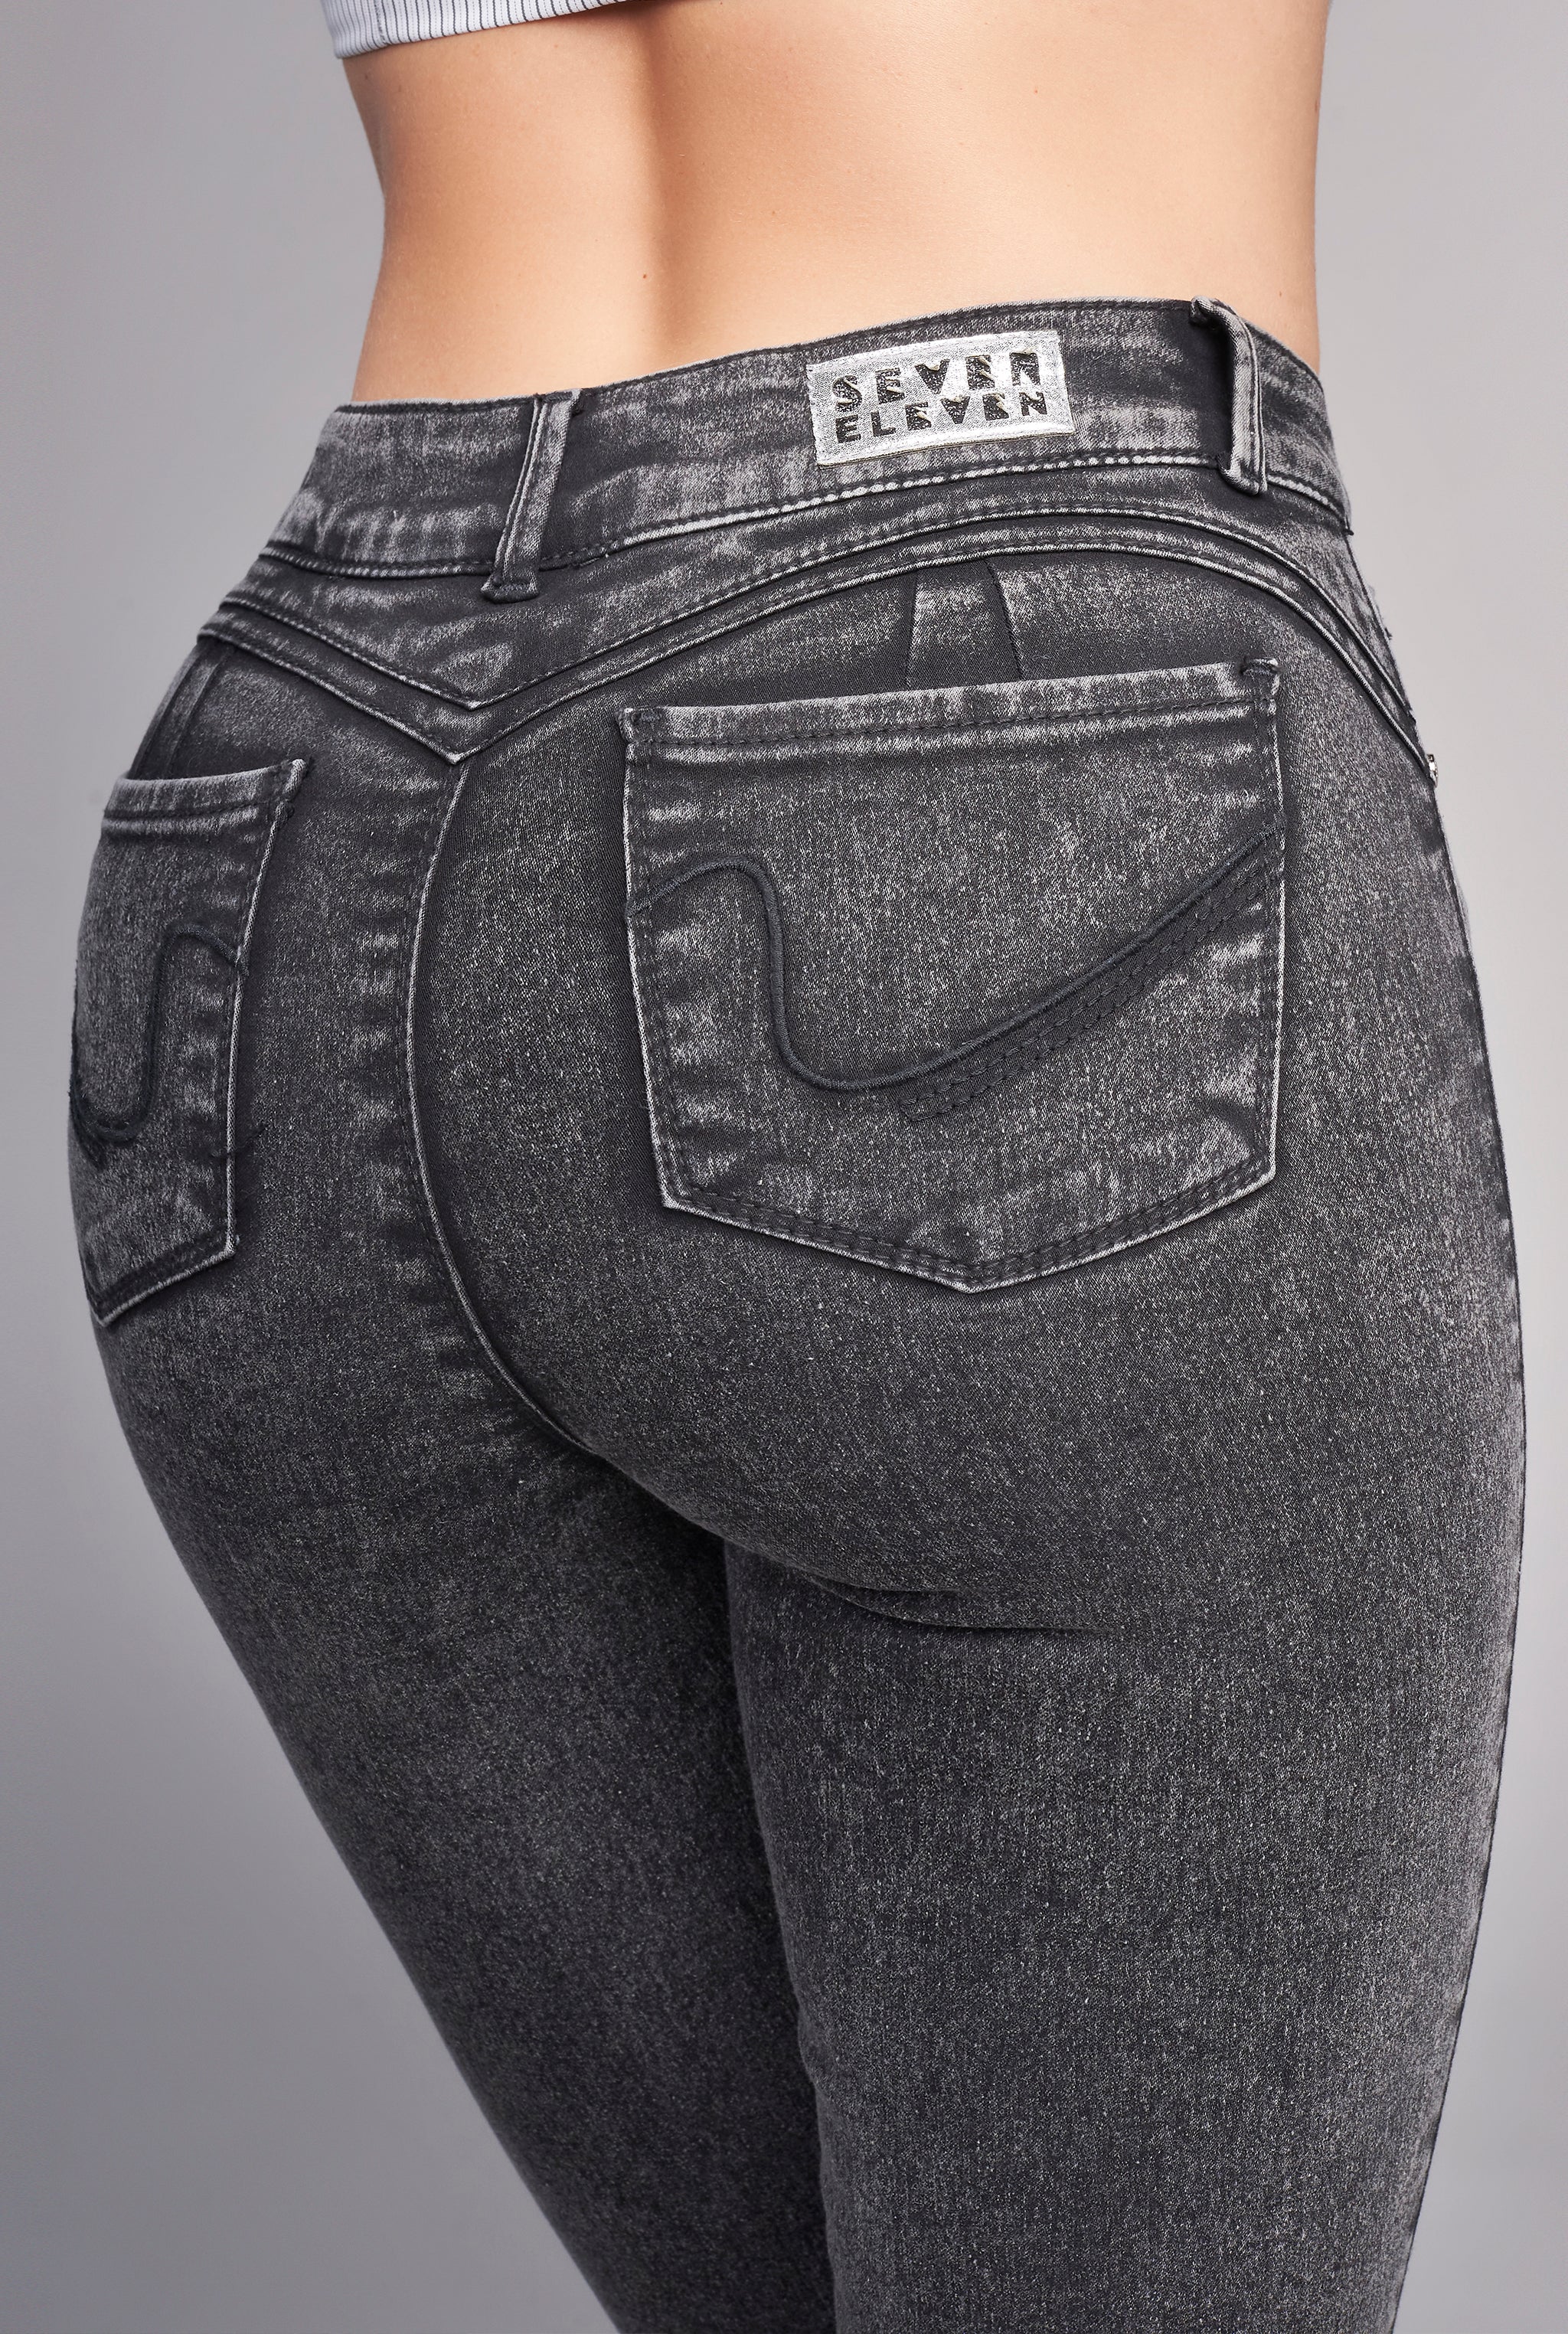 Jeans Súper Skinny Cintura Alta Push UP 9562GRIS